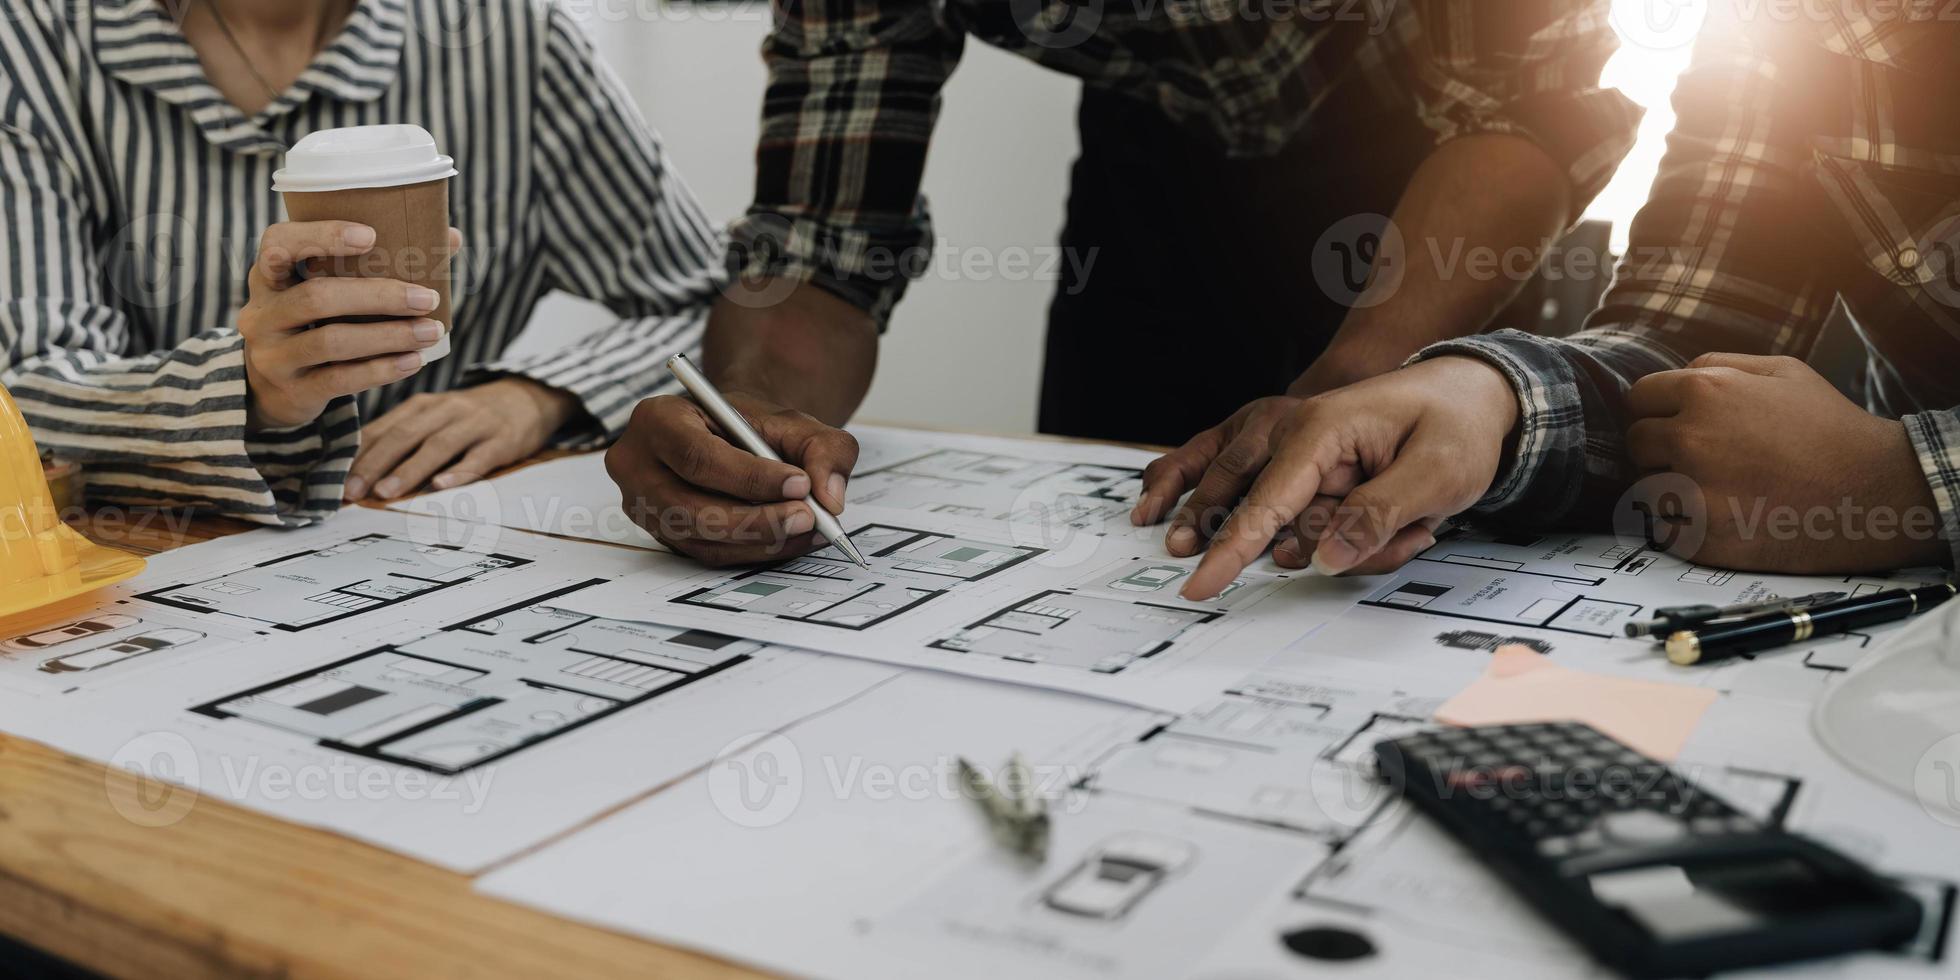 ingenjörsgruppsmöte, ritningsarbete på ritningsmöte för projektarbete med partner på modellbyggande och tekniska verktyg i arbetsplats, konstruktion och strukturkoncept. foto